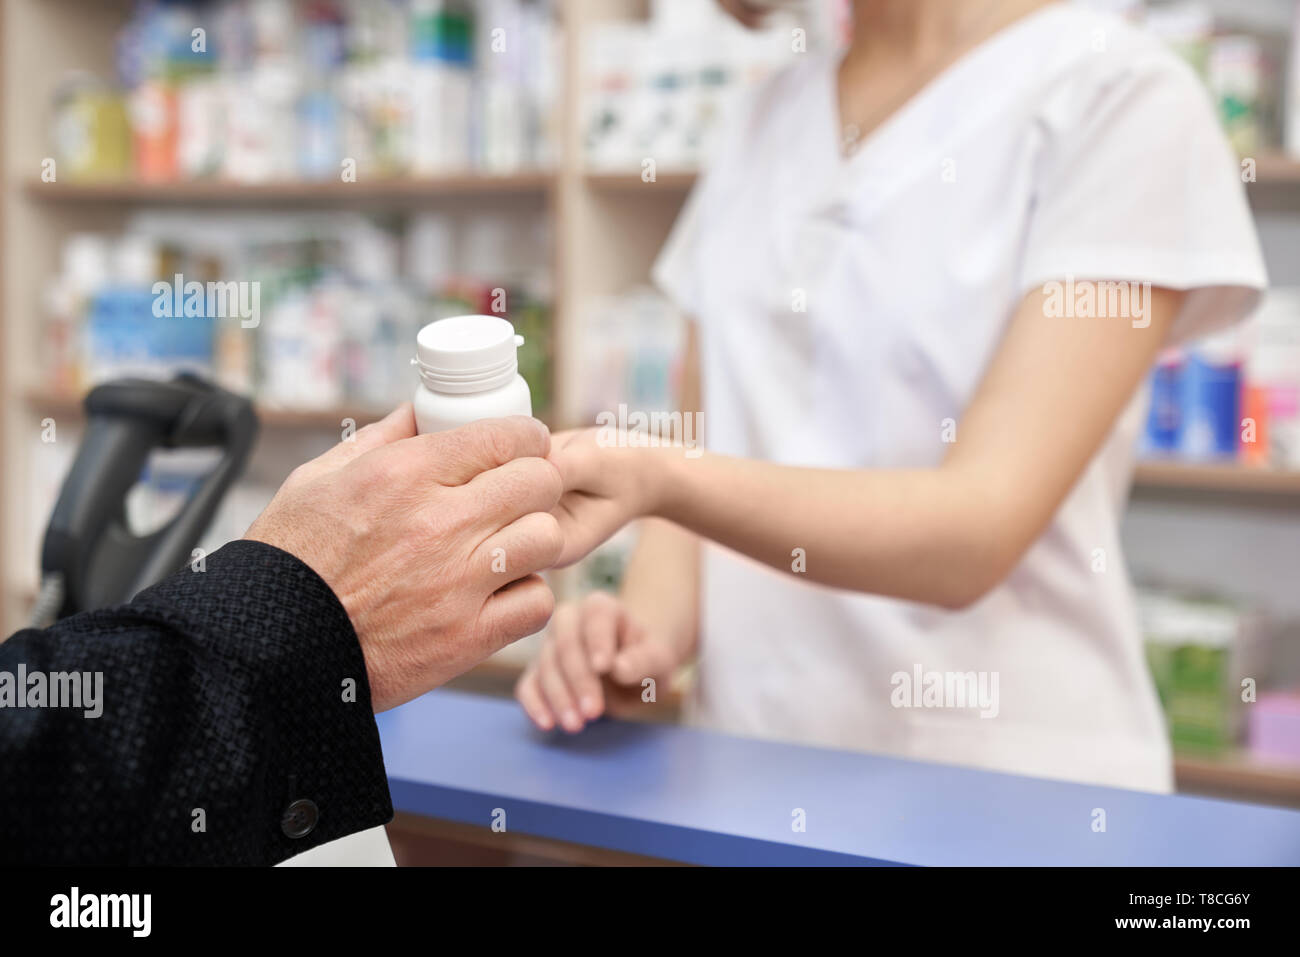 Apotheker arbeiten mit Kunden in der Pharmazie an der Theke an. Frau geben client Medikamente. Mann kaufen Tabletten von der Krankheit. Hand des Client Holding weiße Pille Flasche. Stockfoto